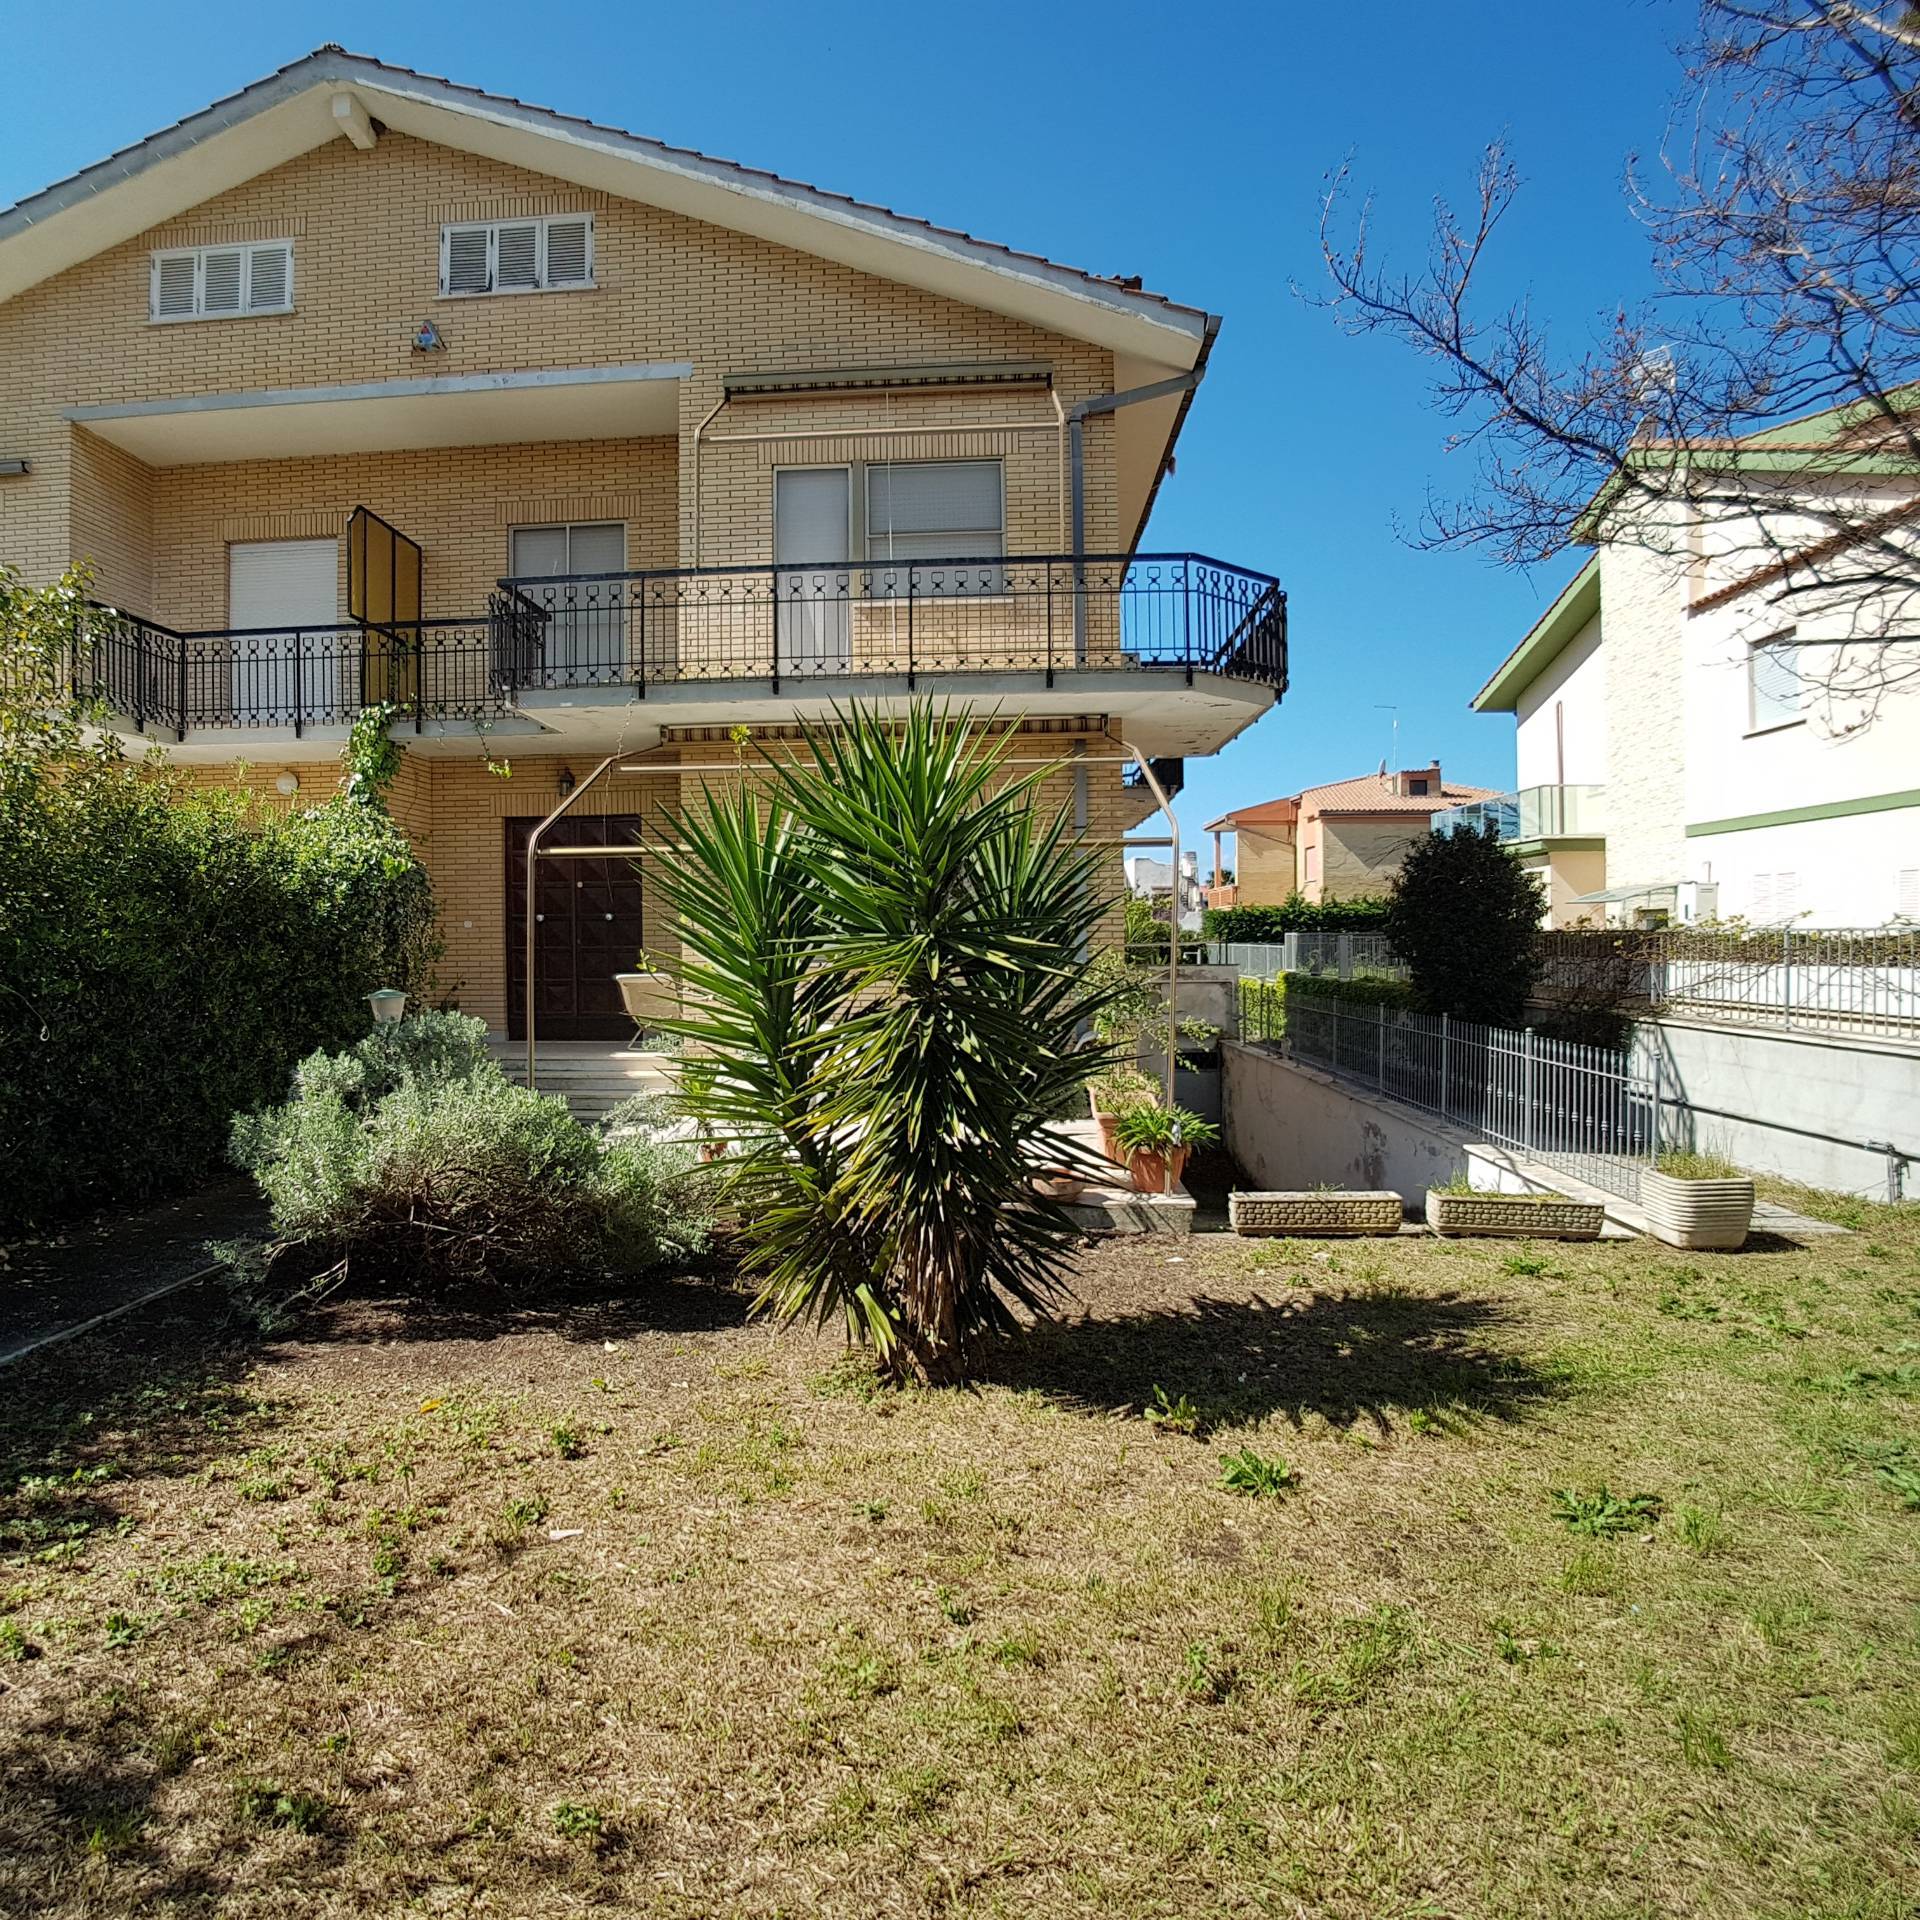 Villa in vendita a Cerveteri, 12 locali, zona Zona: Cerenova, prezzo € 395.000 | CambioCasa.it